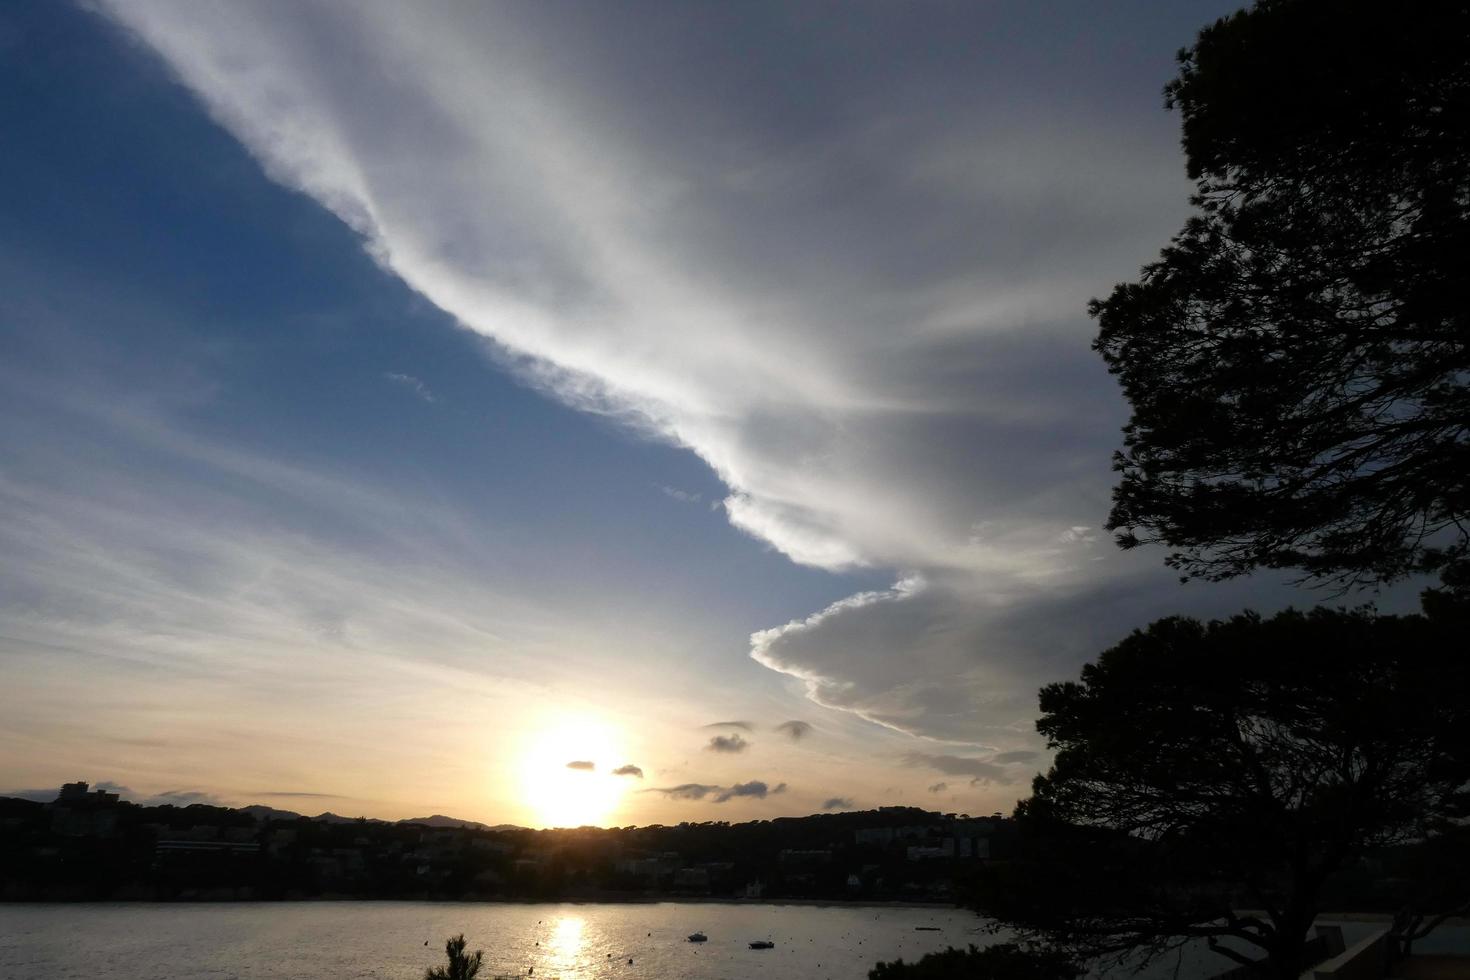 Wolken und Lichteffekte am Himmel in der Morgen- oder Abenddämmerung. foto